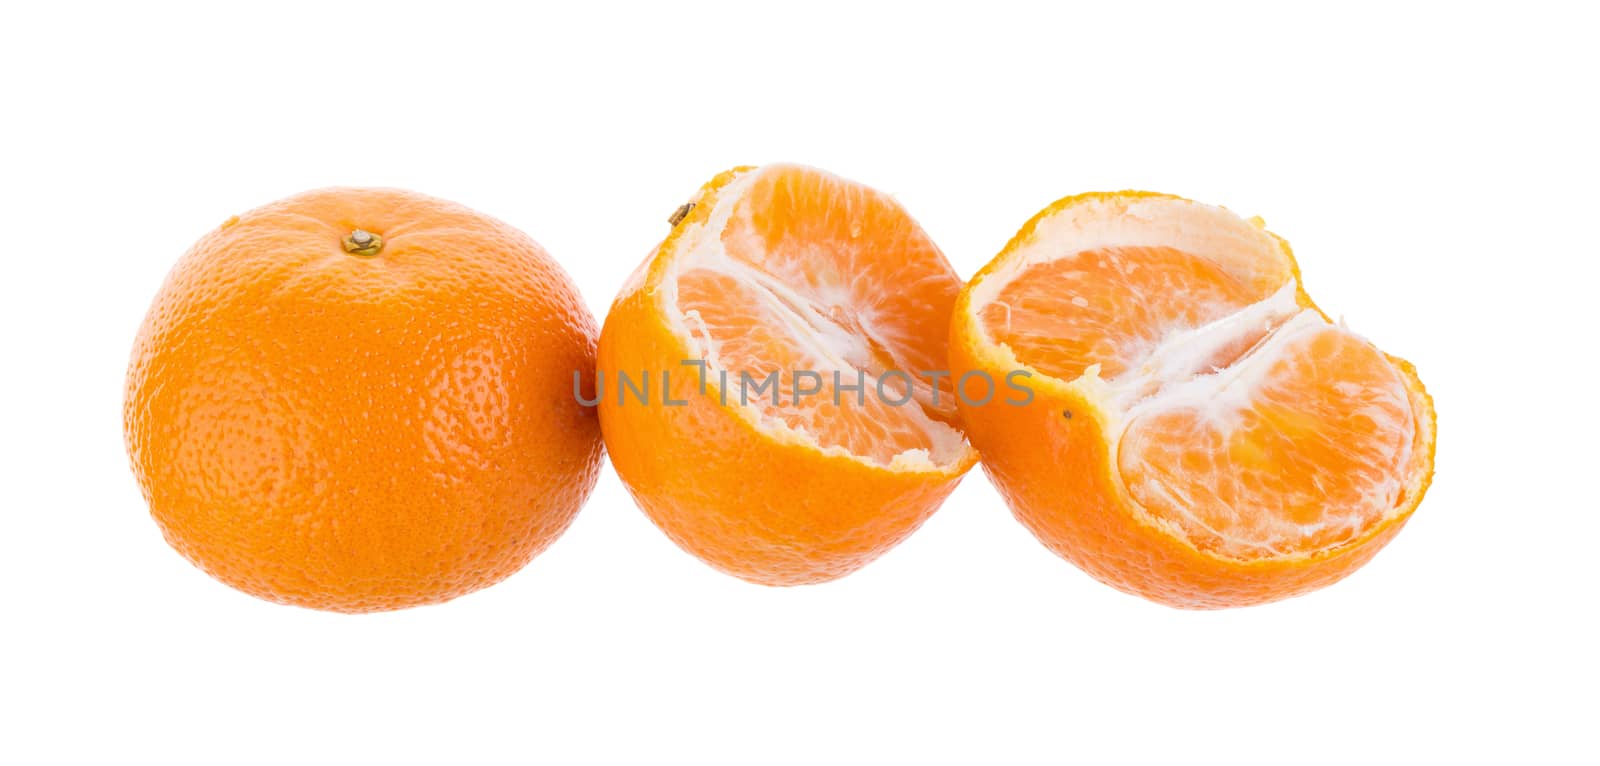 Half orange fruit on white background, fresh and juicy by kaiskynet